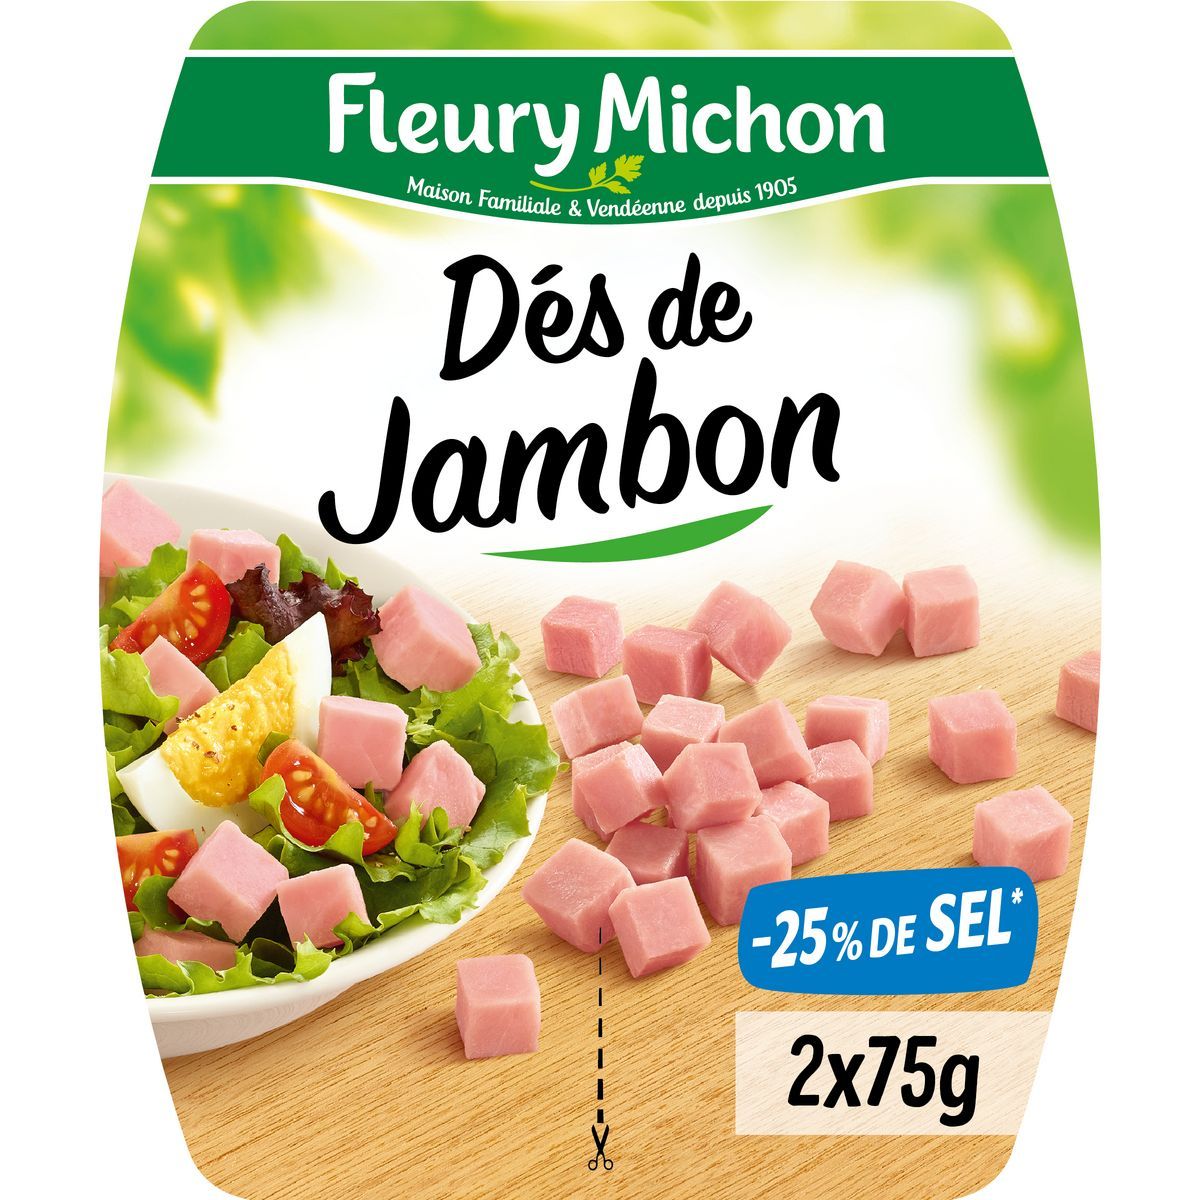 DÉS DE JAMBON FLEURY MICHON